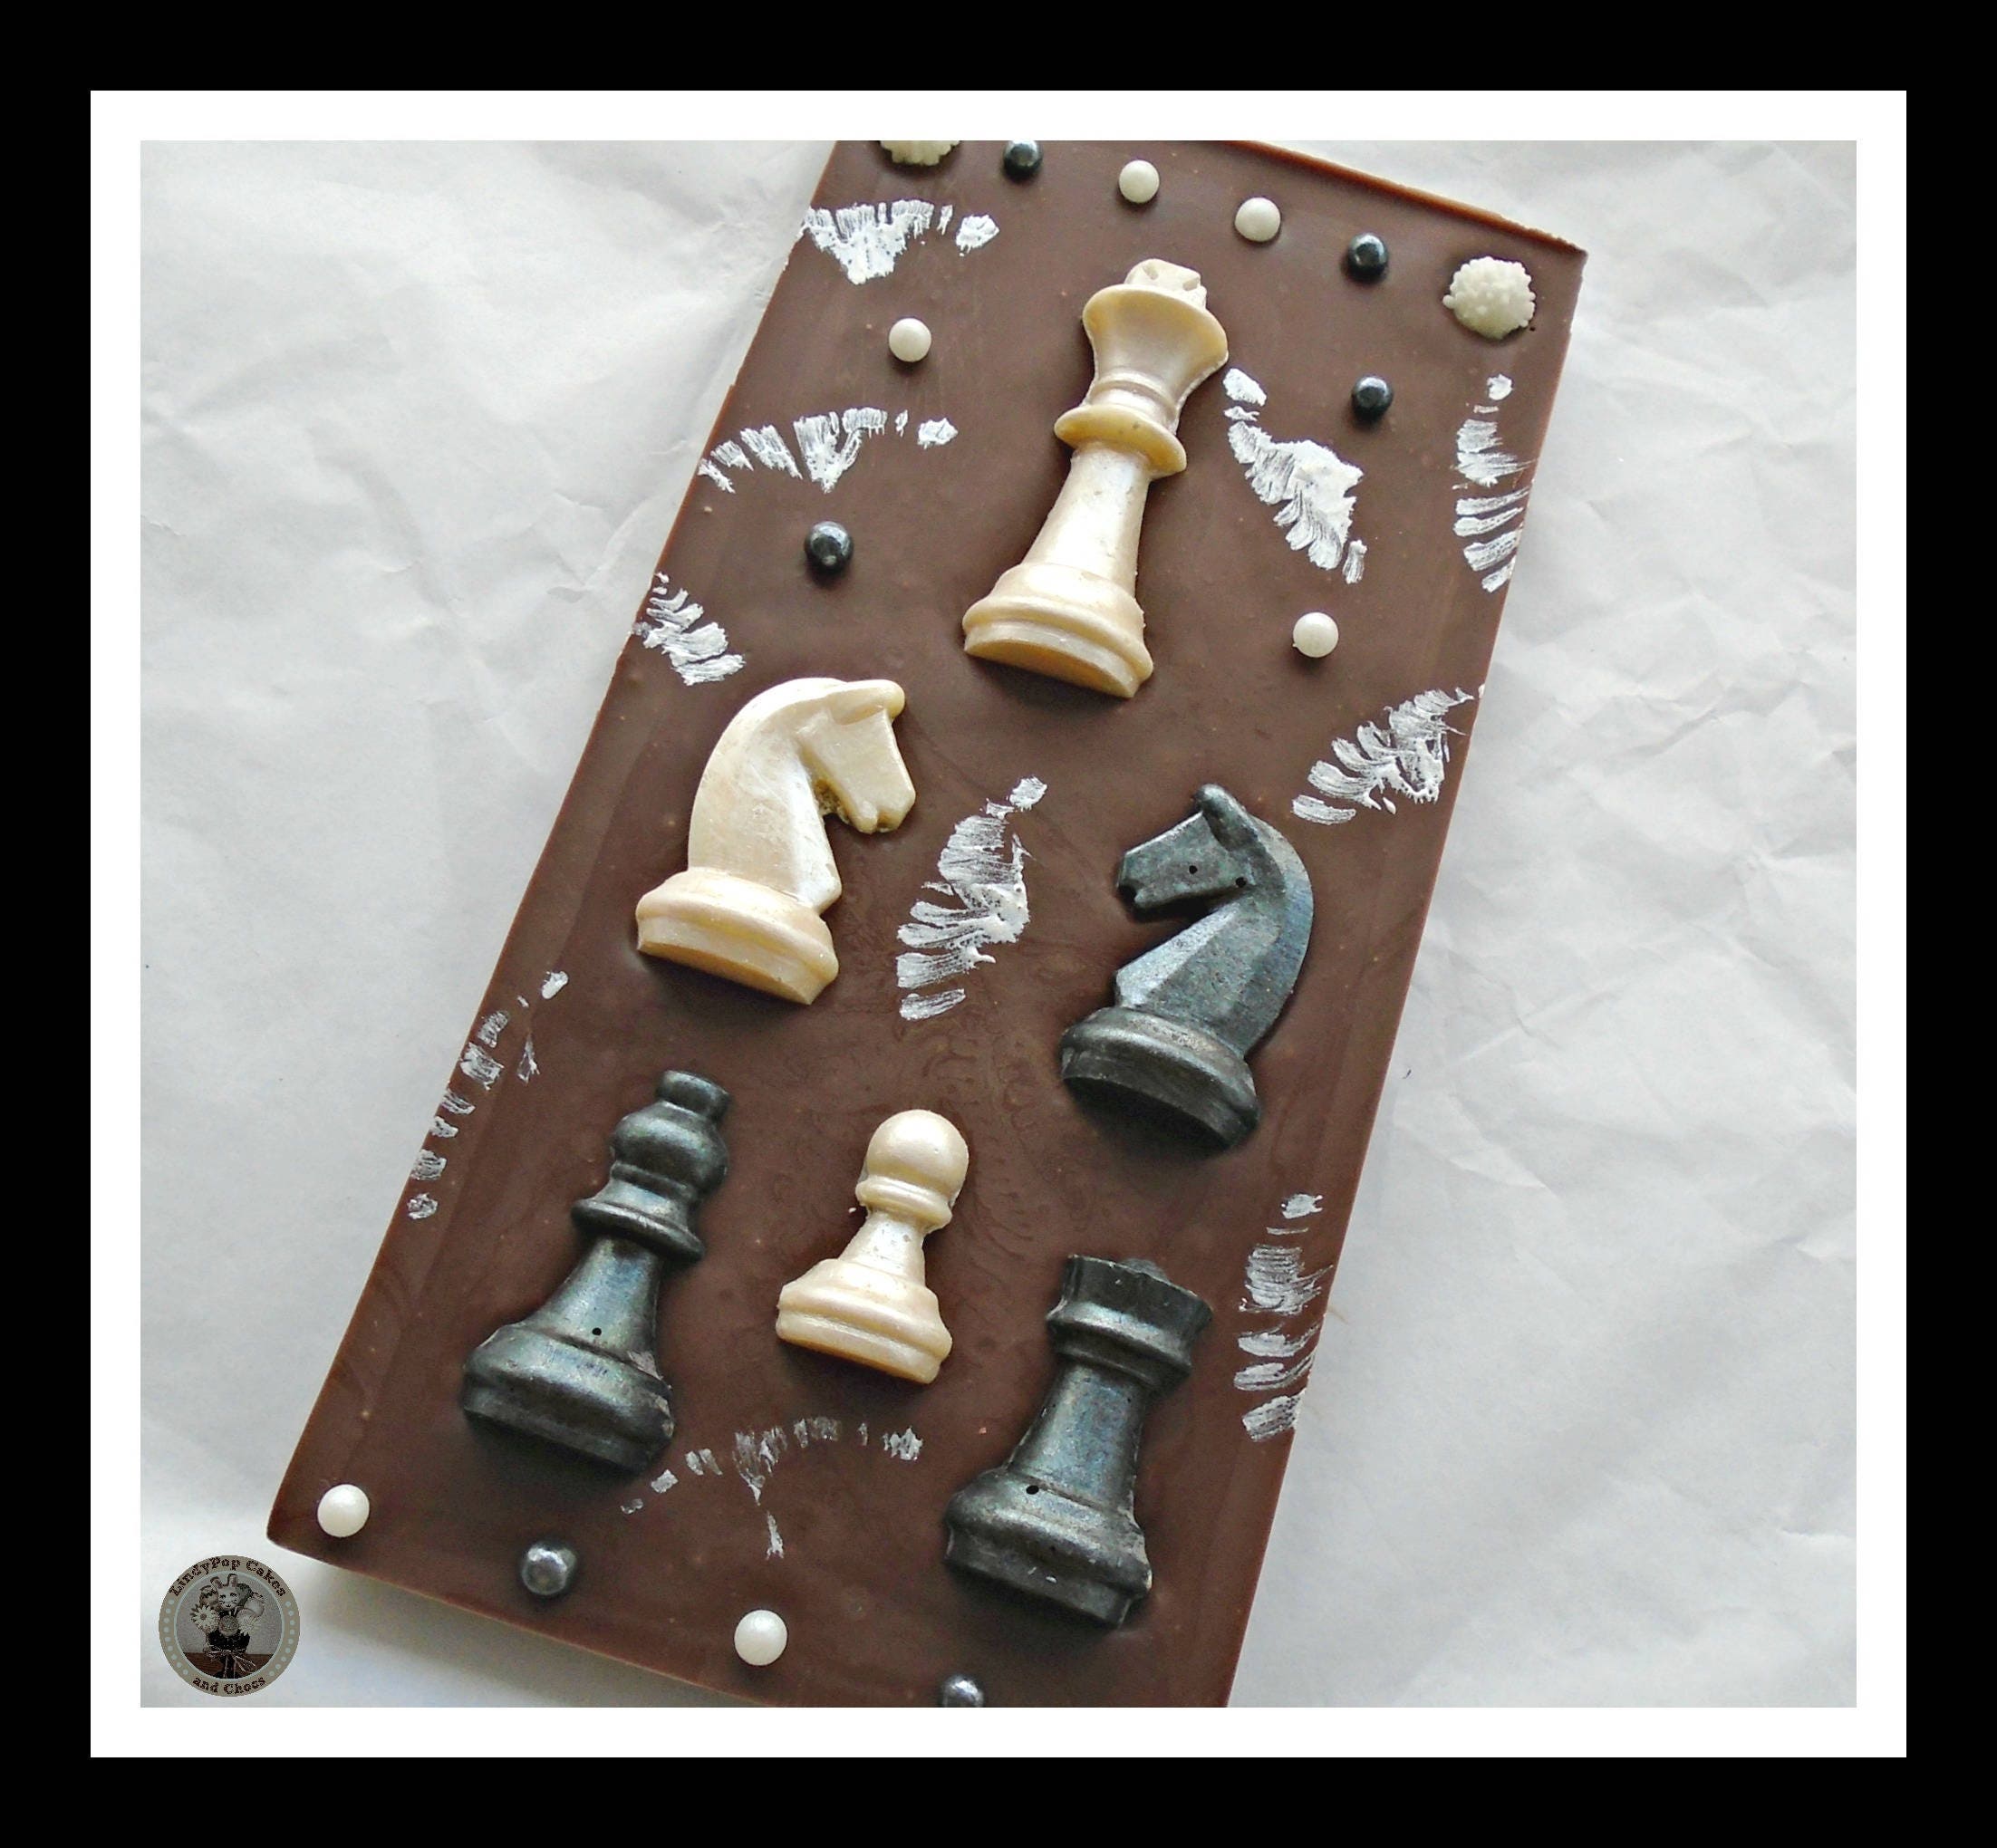 Rook Chess Piece, #817824